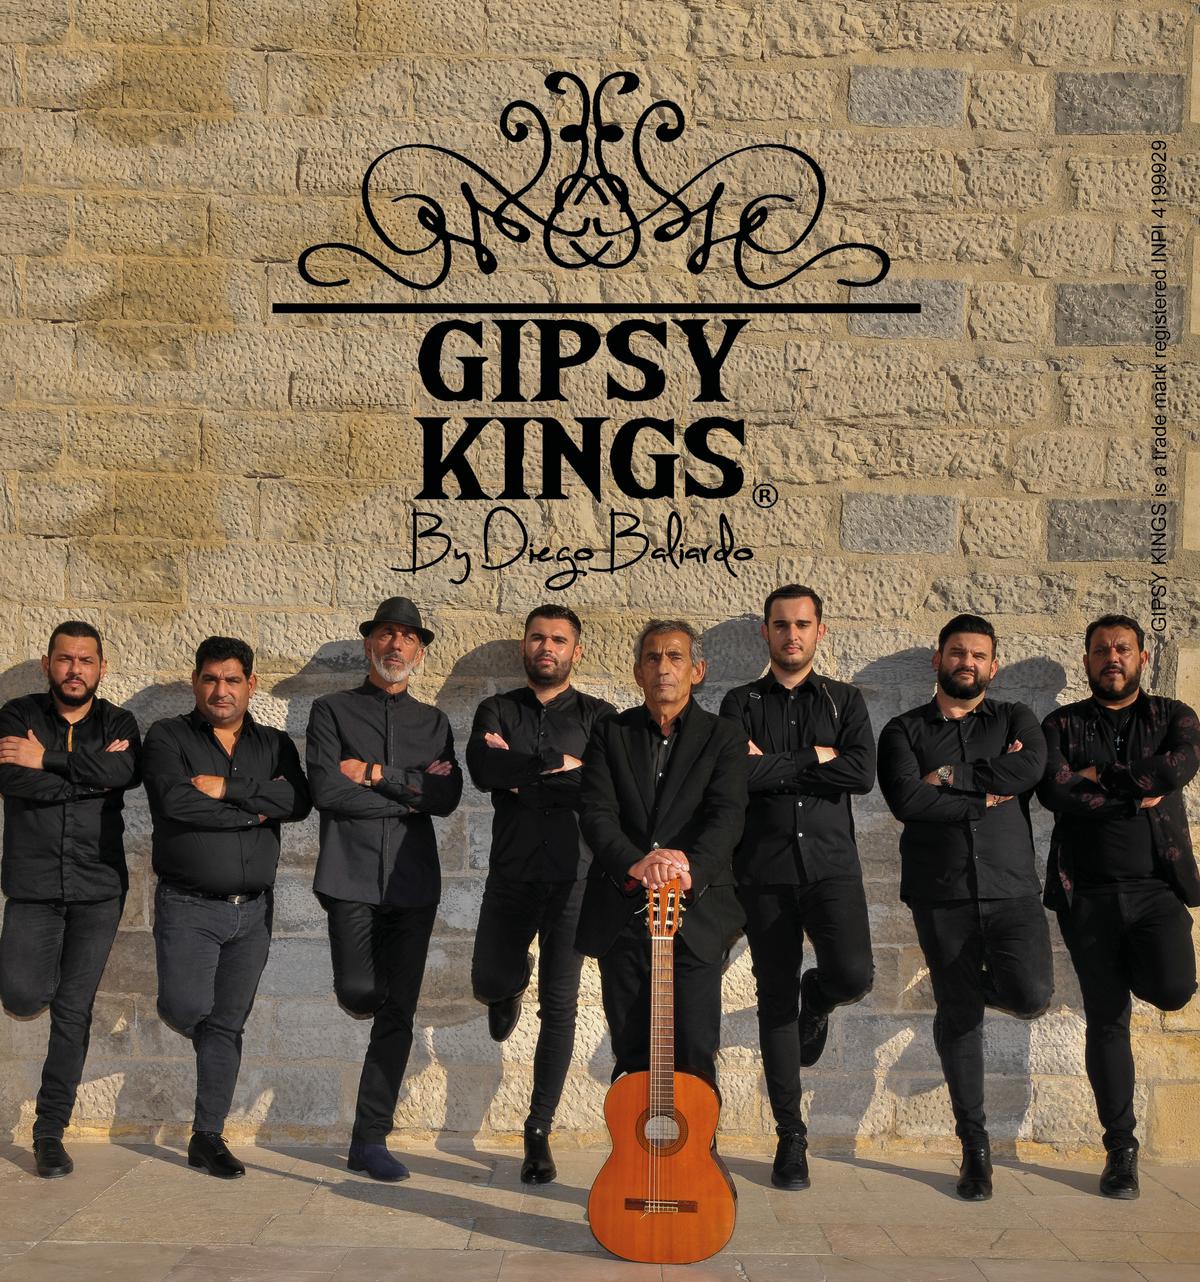 Gypsy Kings